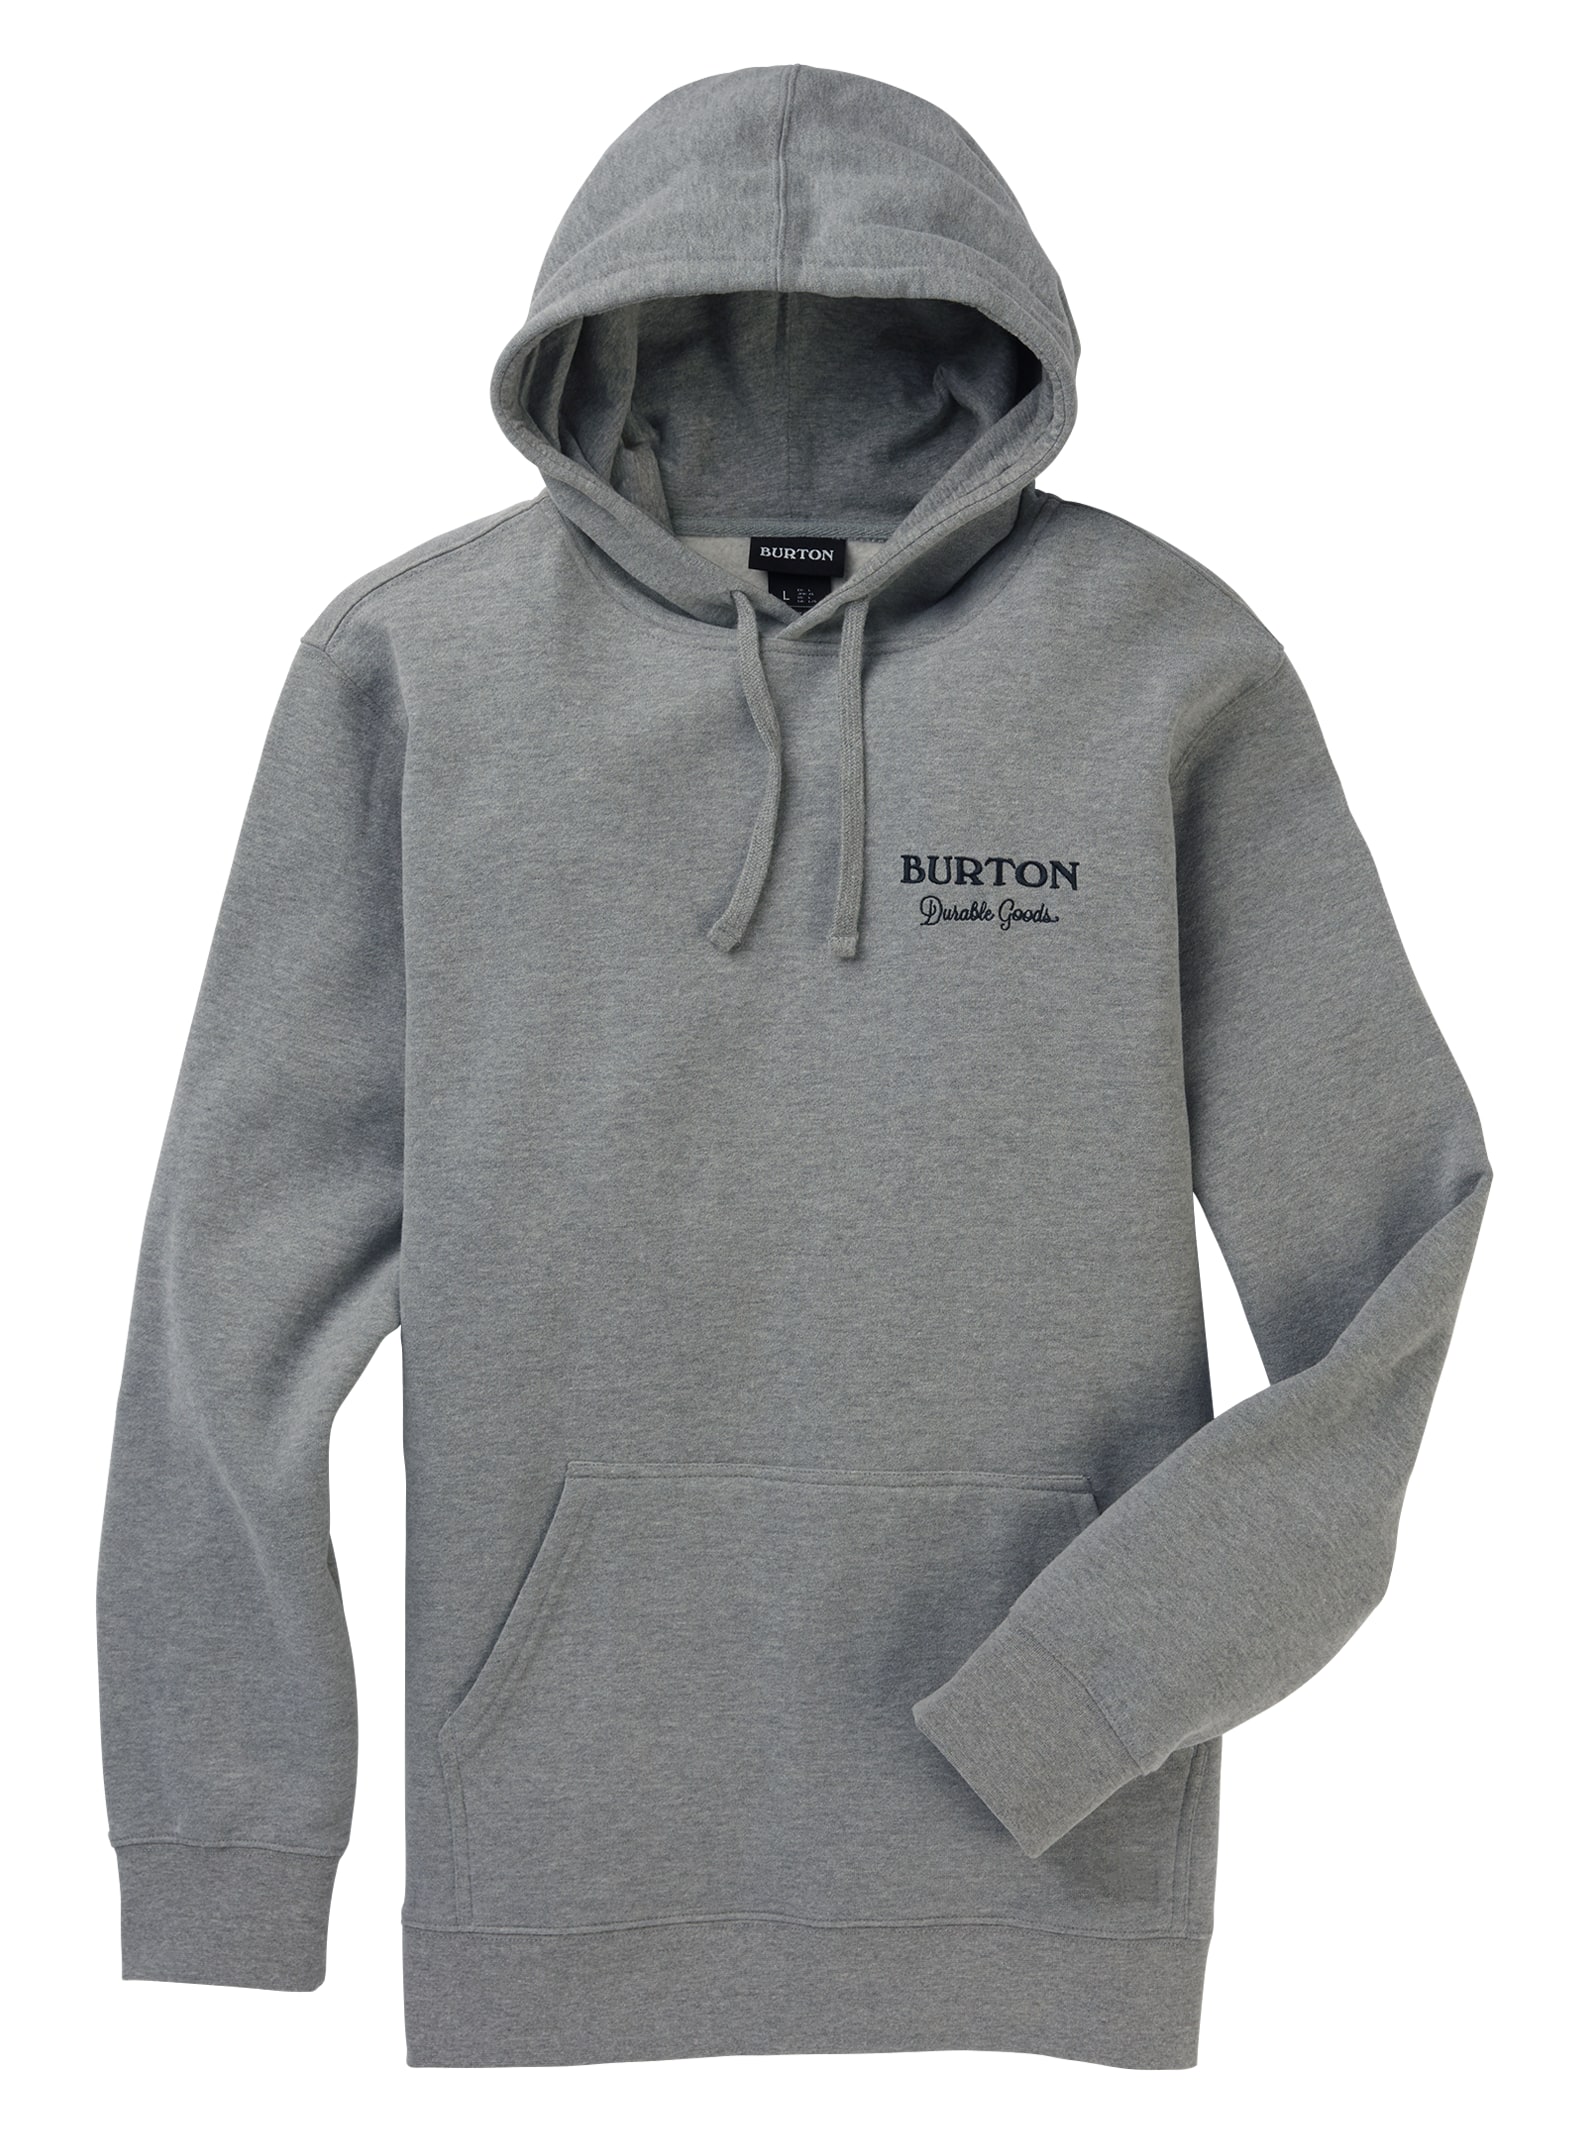 Men's Burton Durable Goods Pullover Hoodie | Burton.com Winter 2020 DE